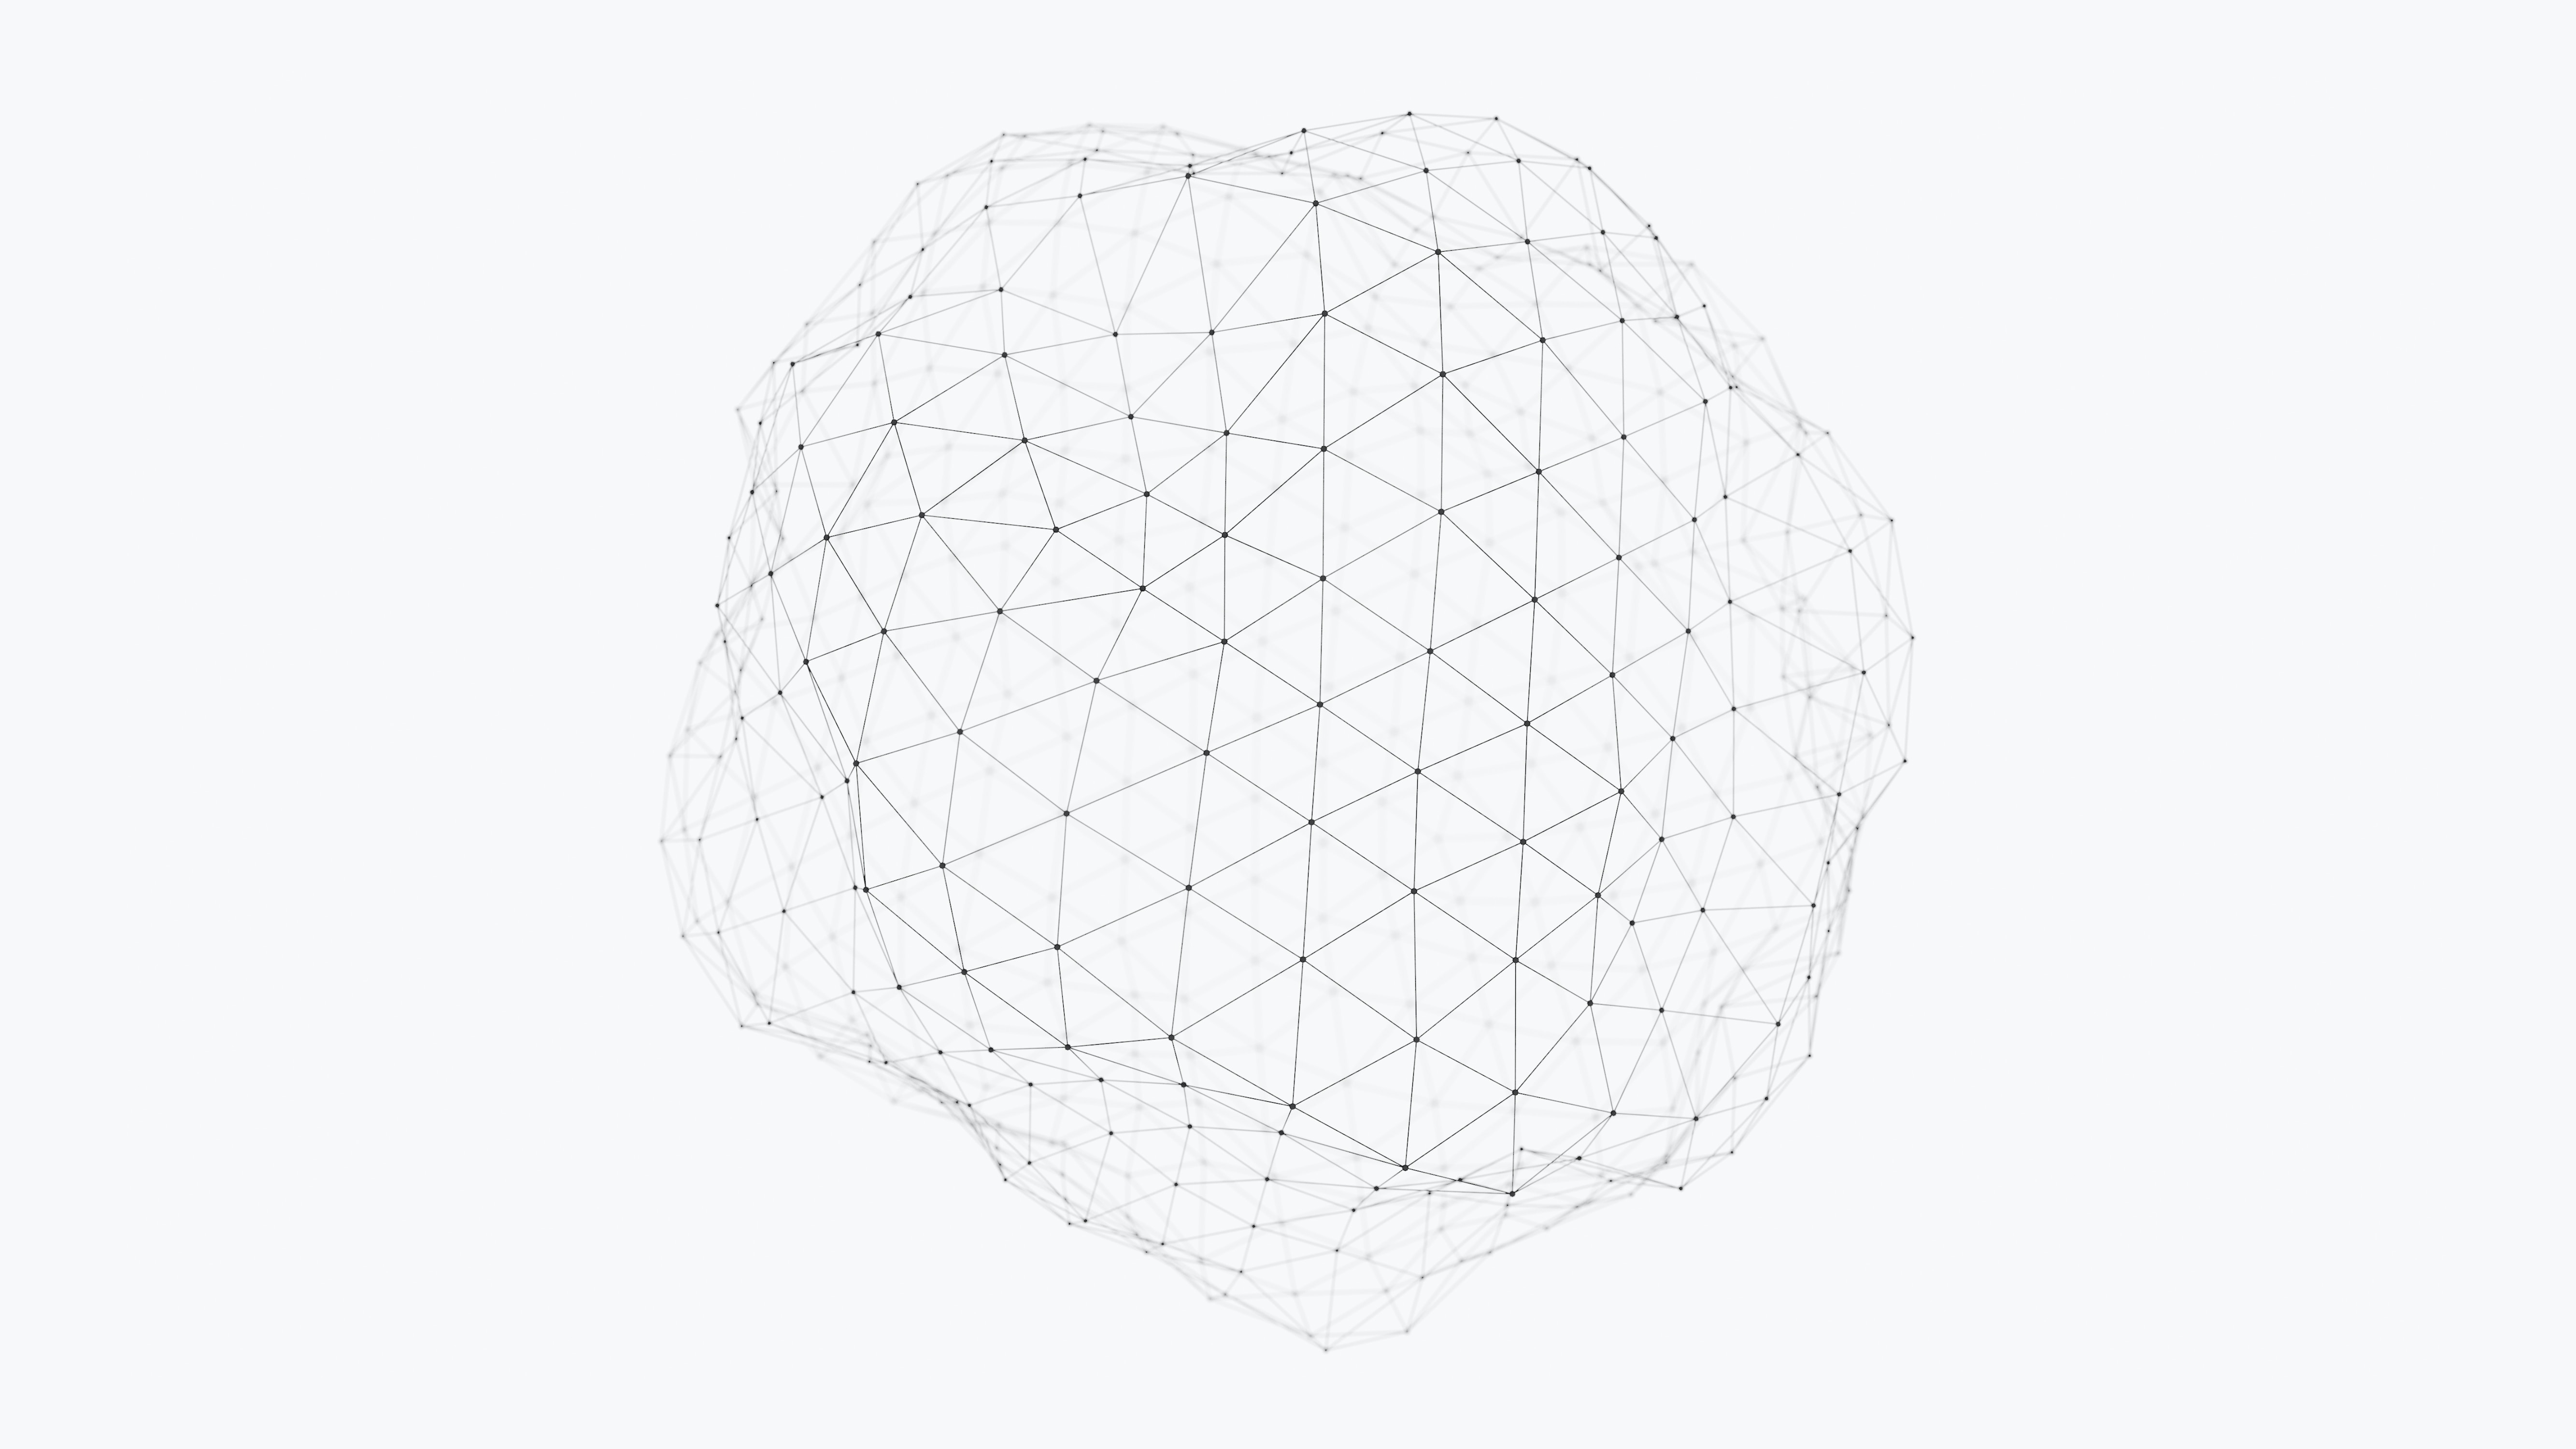 illustration of data mesh